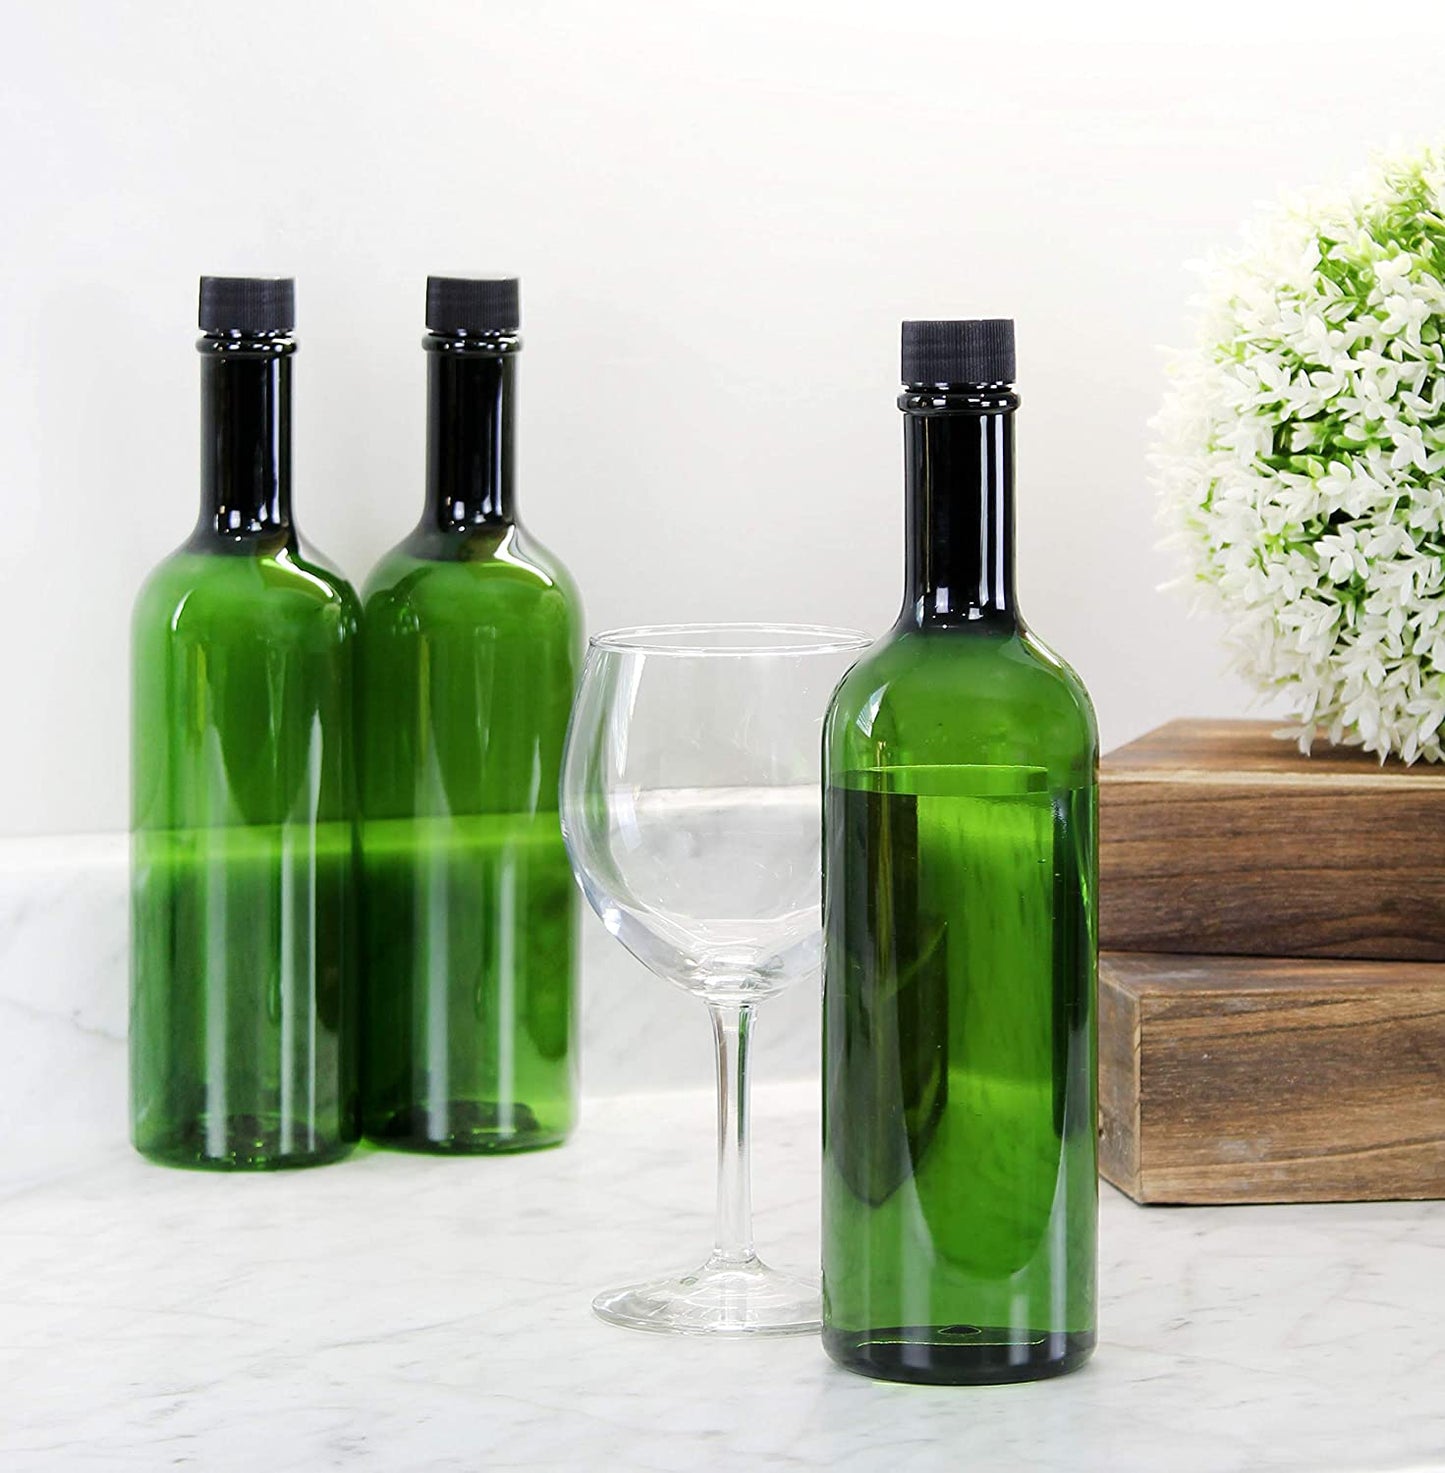 Plastic Wine Bottles (Case of 60, Green) - SH_1799_CASE